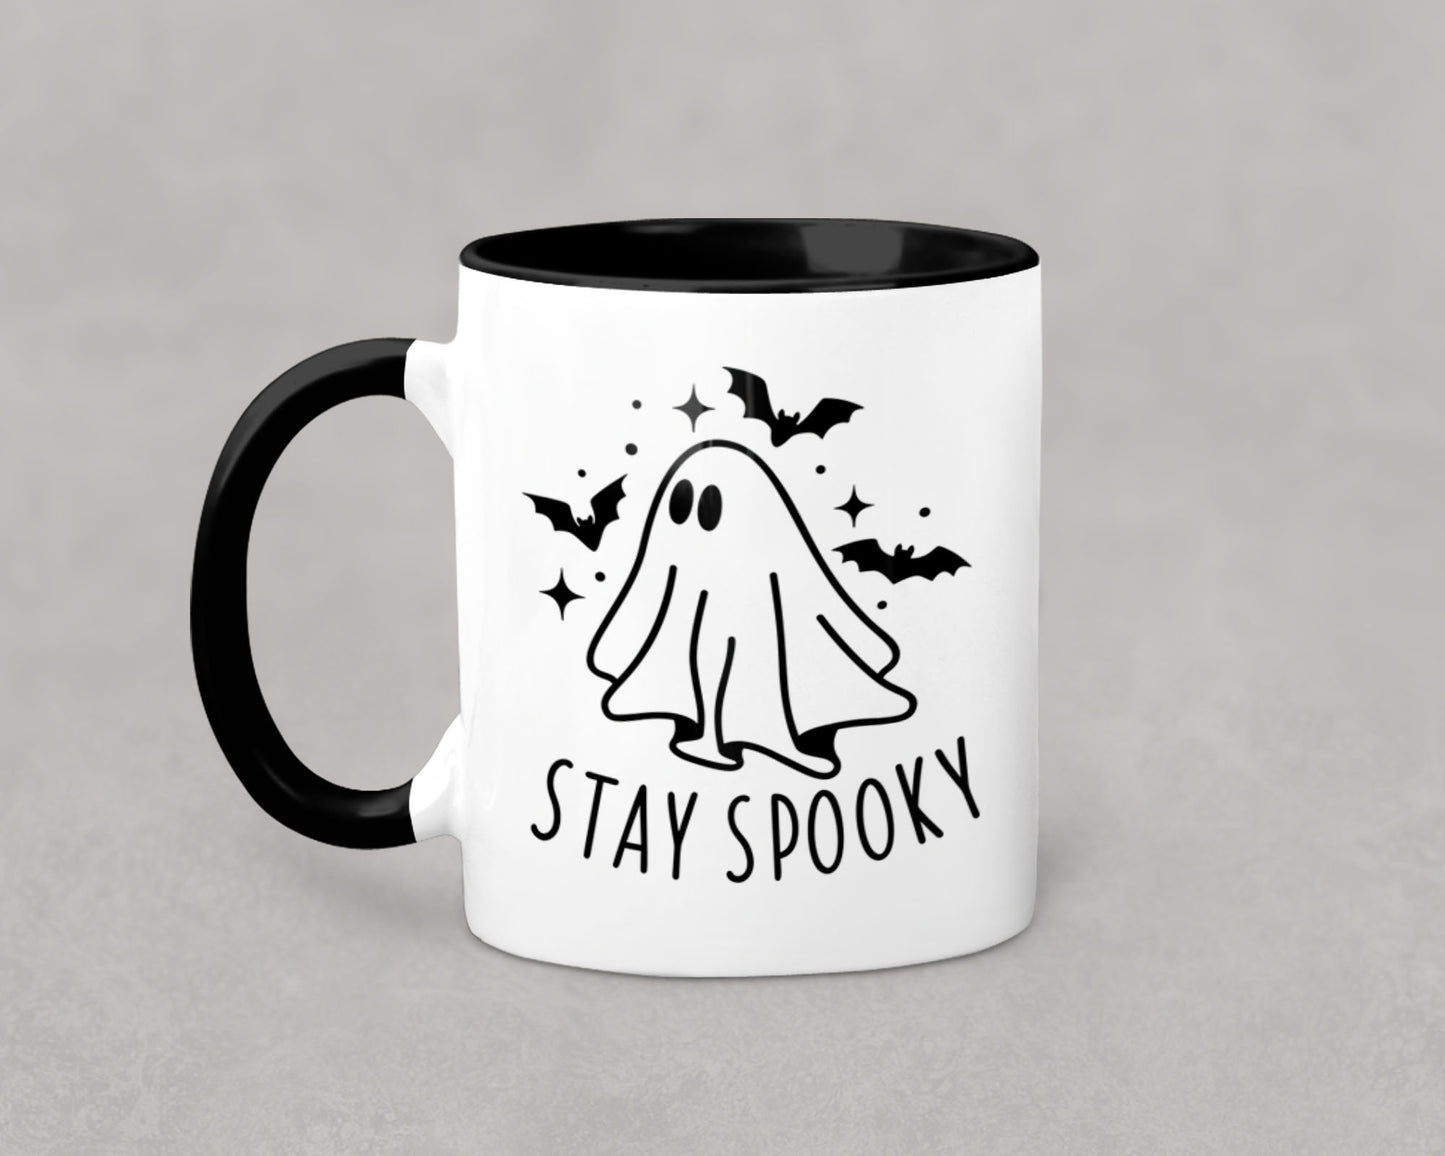 Stay Spooky Ceramic Mug